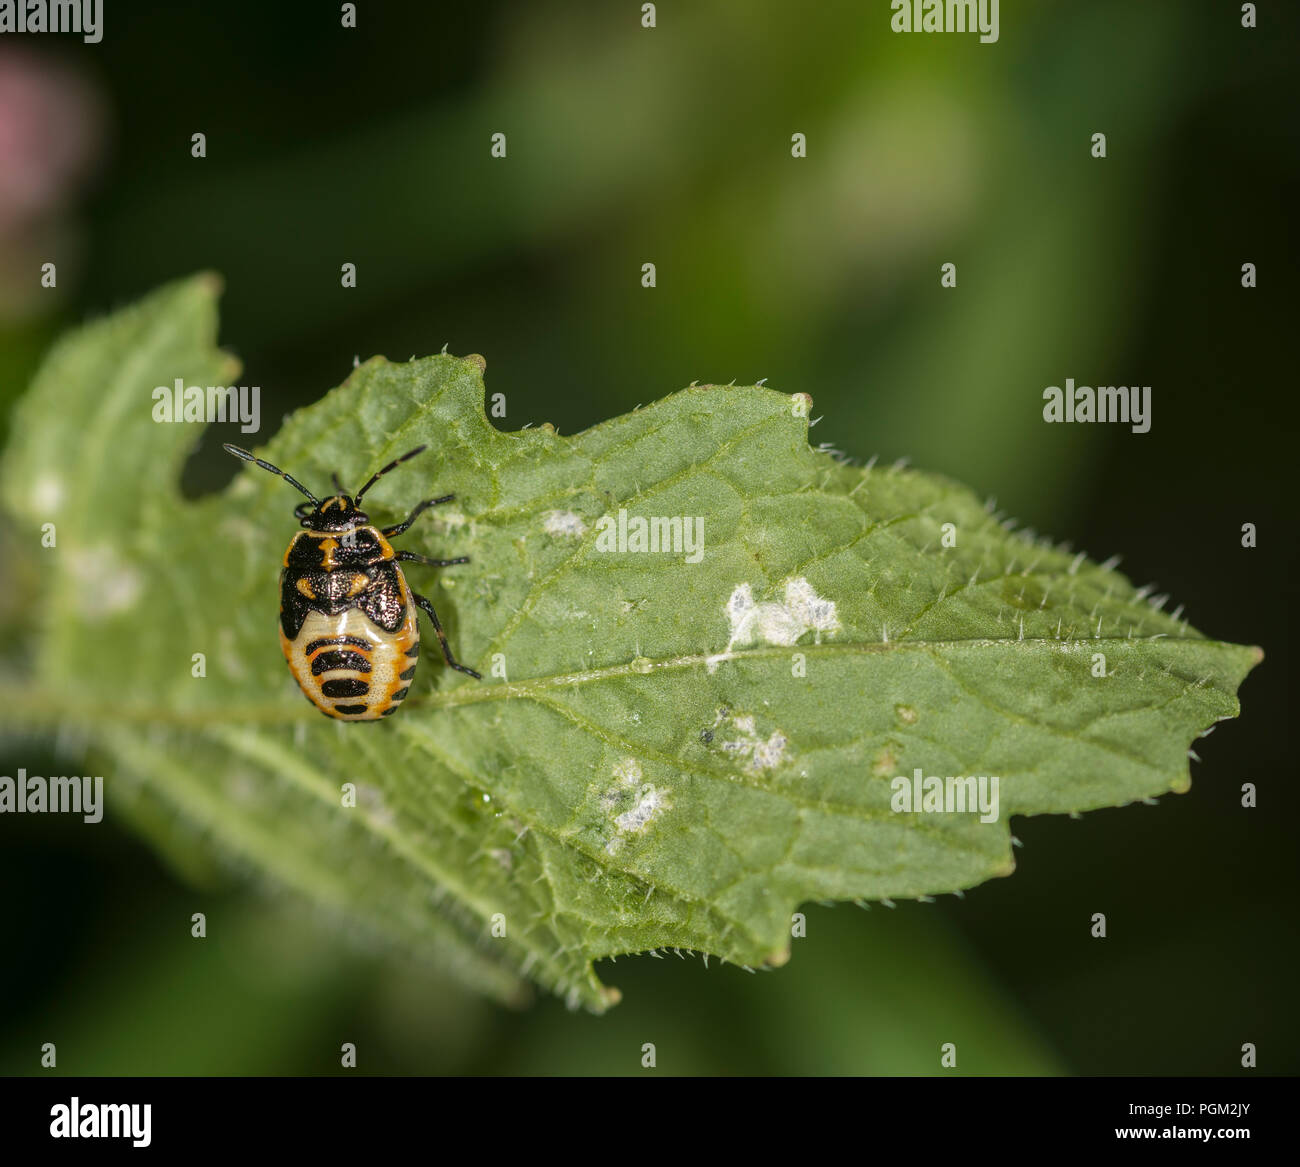 Frisch geschlüpfte Braun marmorated shield Bug auf einem grünen Blatt Stockfoto